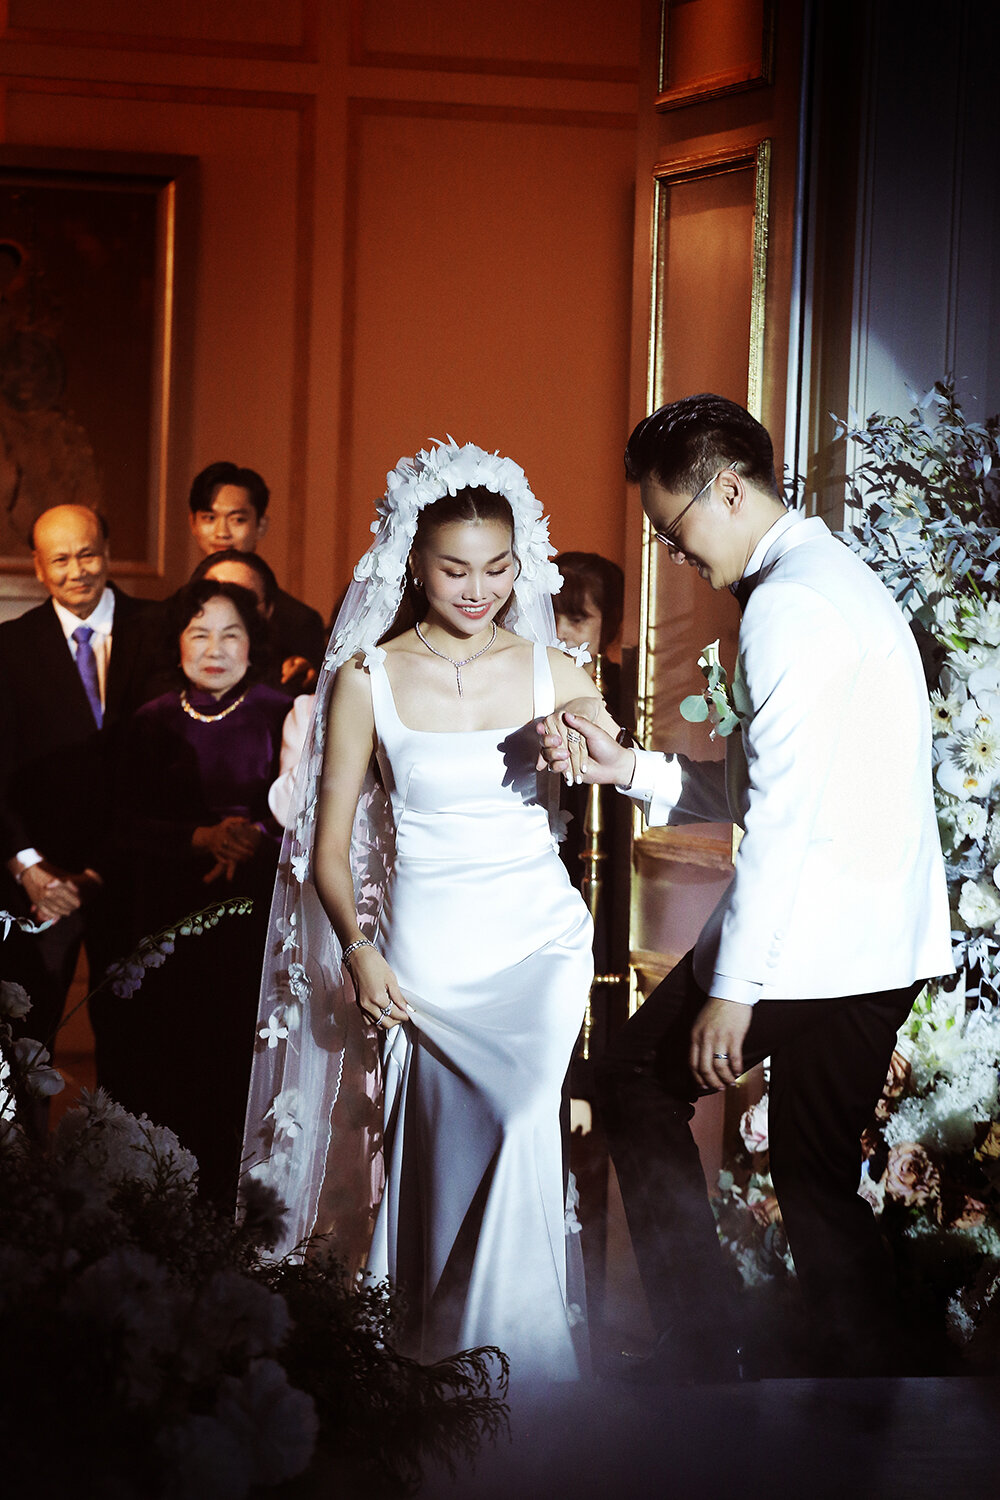  Thanh Hằng đeo trang sức 10 tỷ đồng trong đám cưới với chồng nhạc trưởng - 9